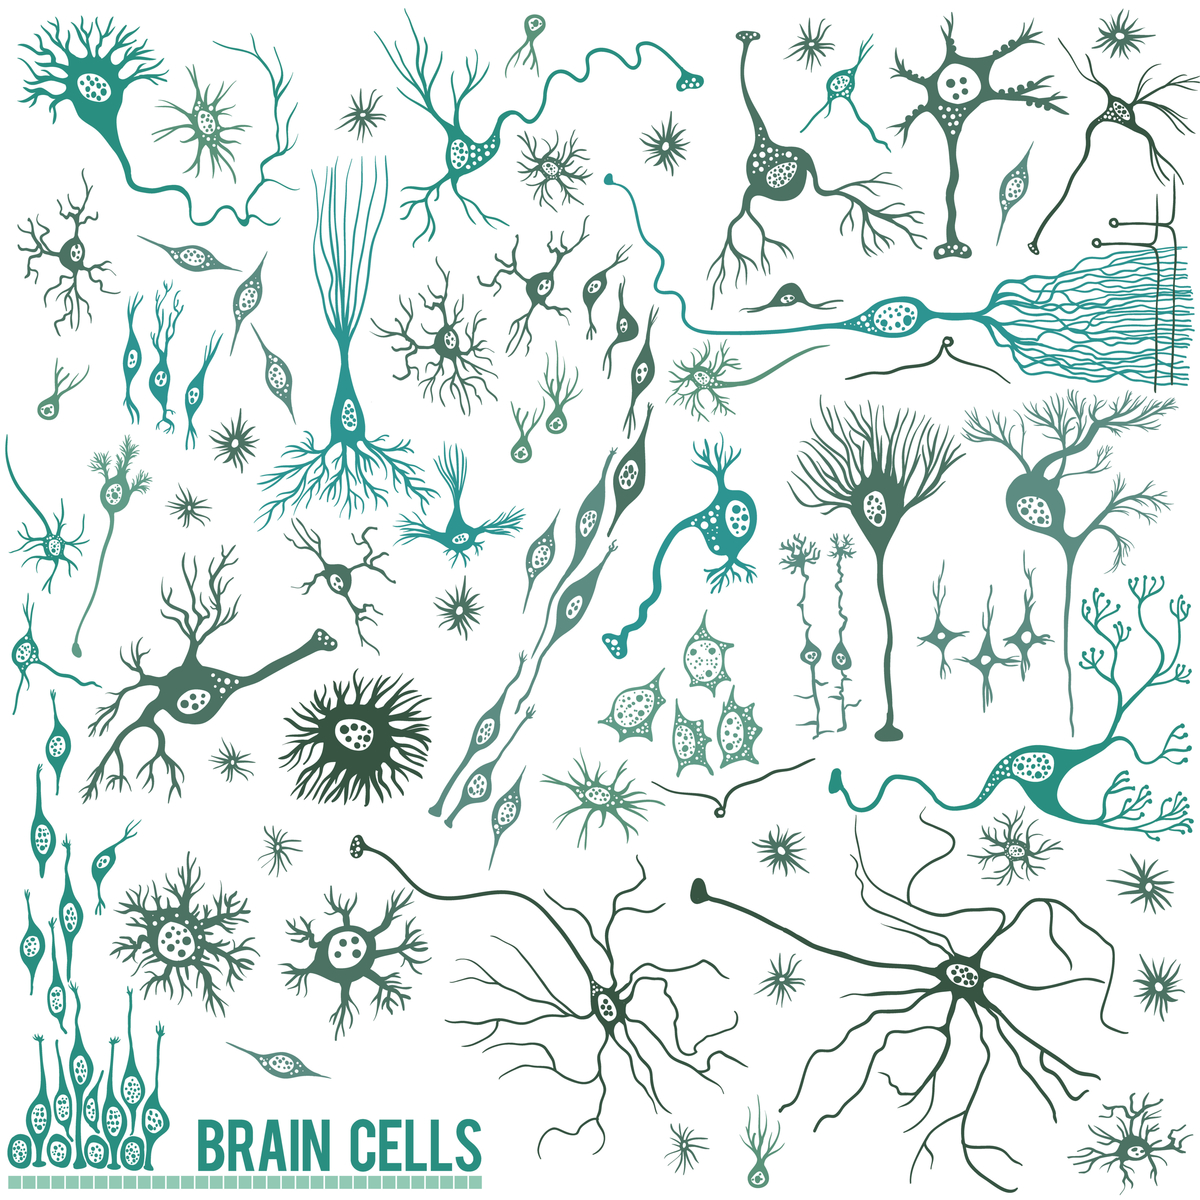 Células del cerebro: hay muchos tipos de células en el cerebro; las neuronas son sólo un tipo. Sin embargo, las neuronas parecen ser un tipo celular particularmente vulnerable en la EH.   